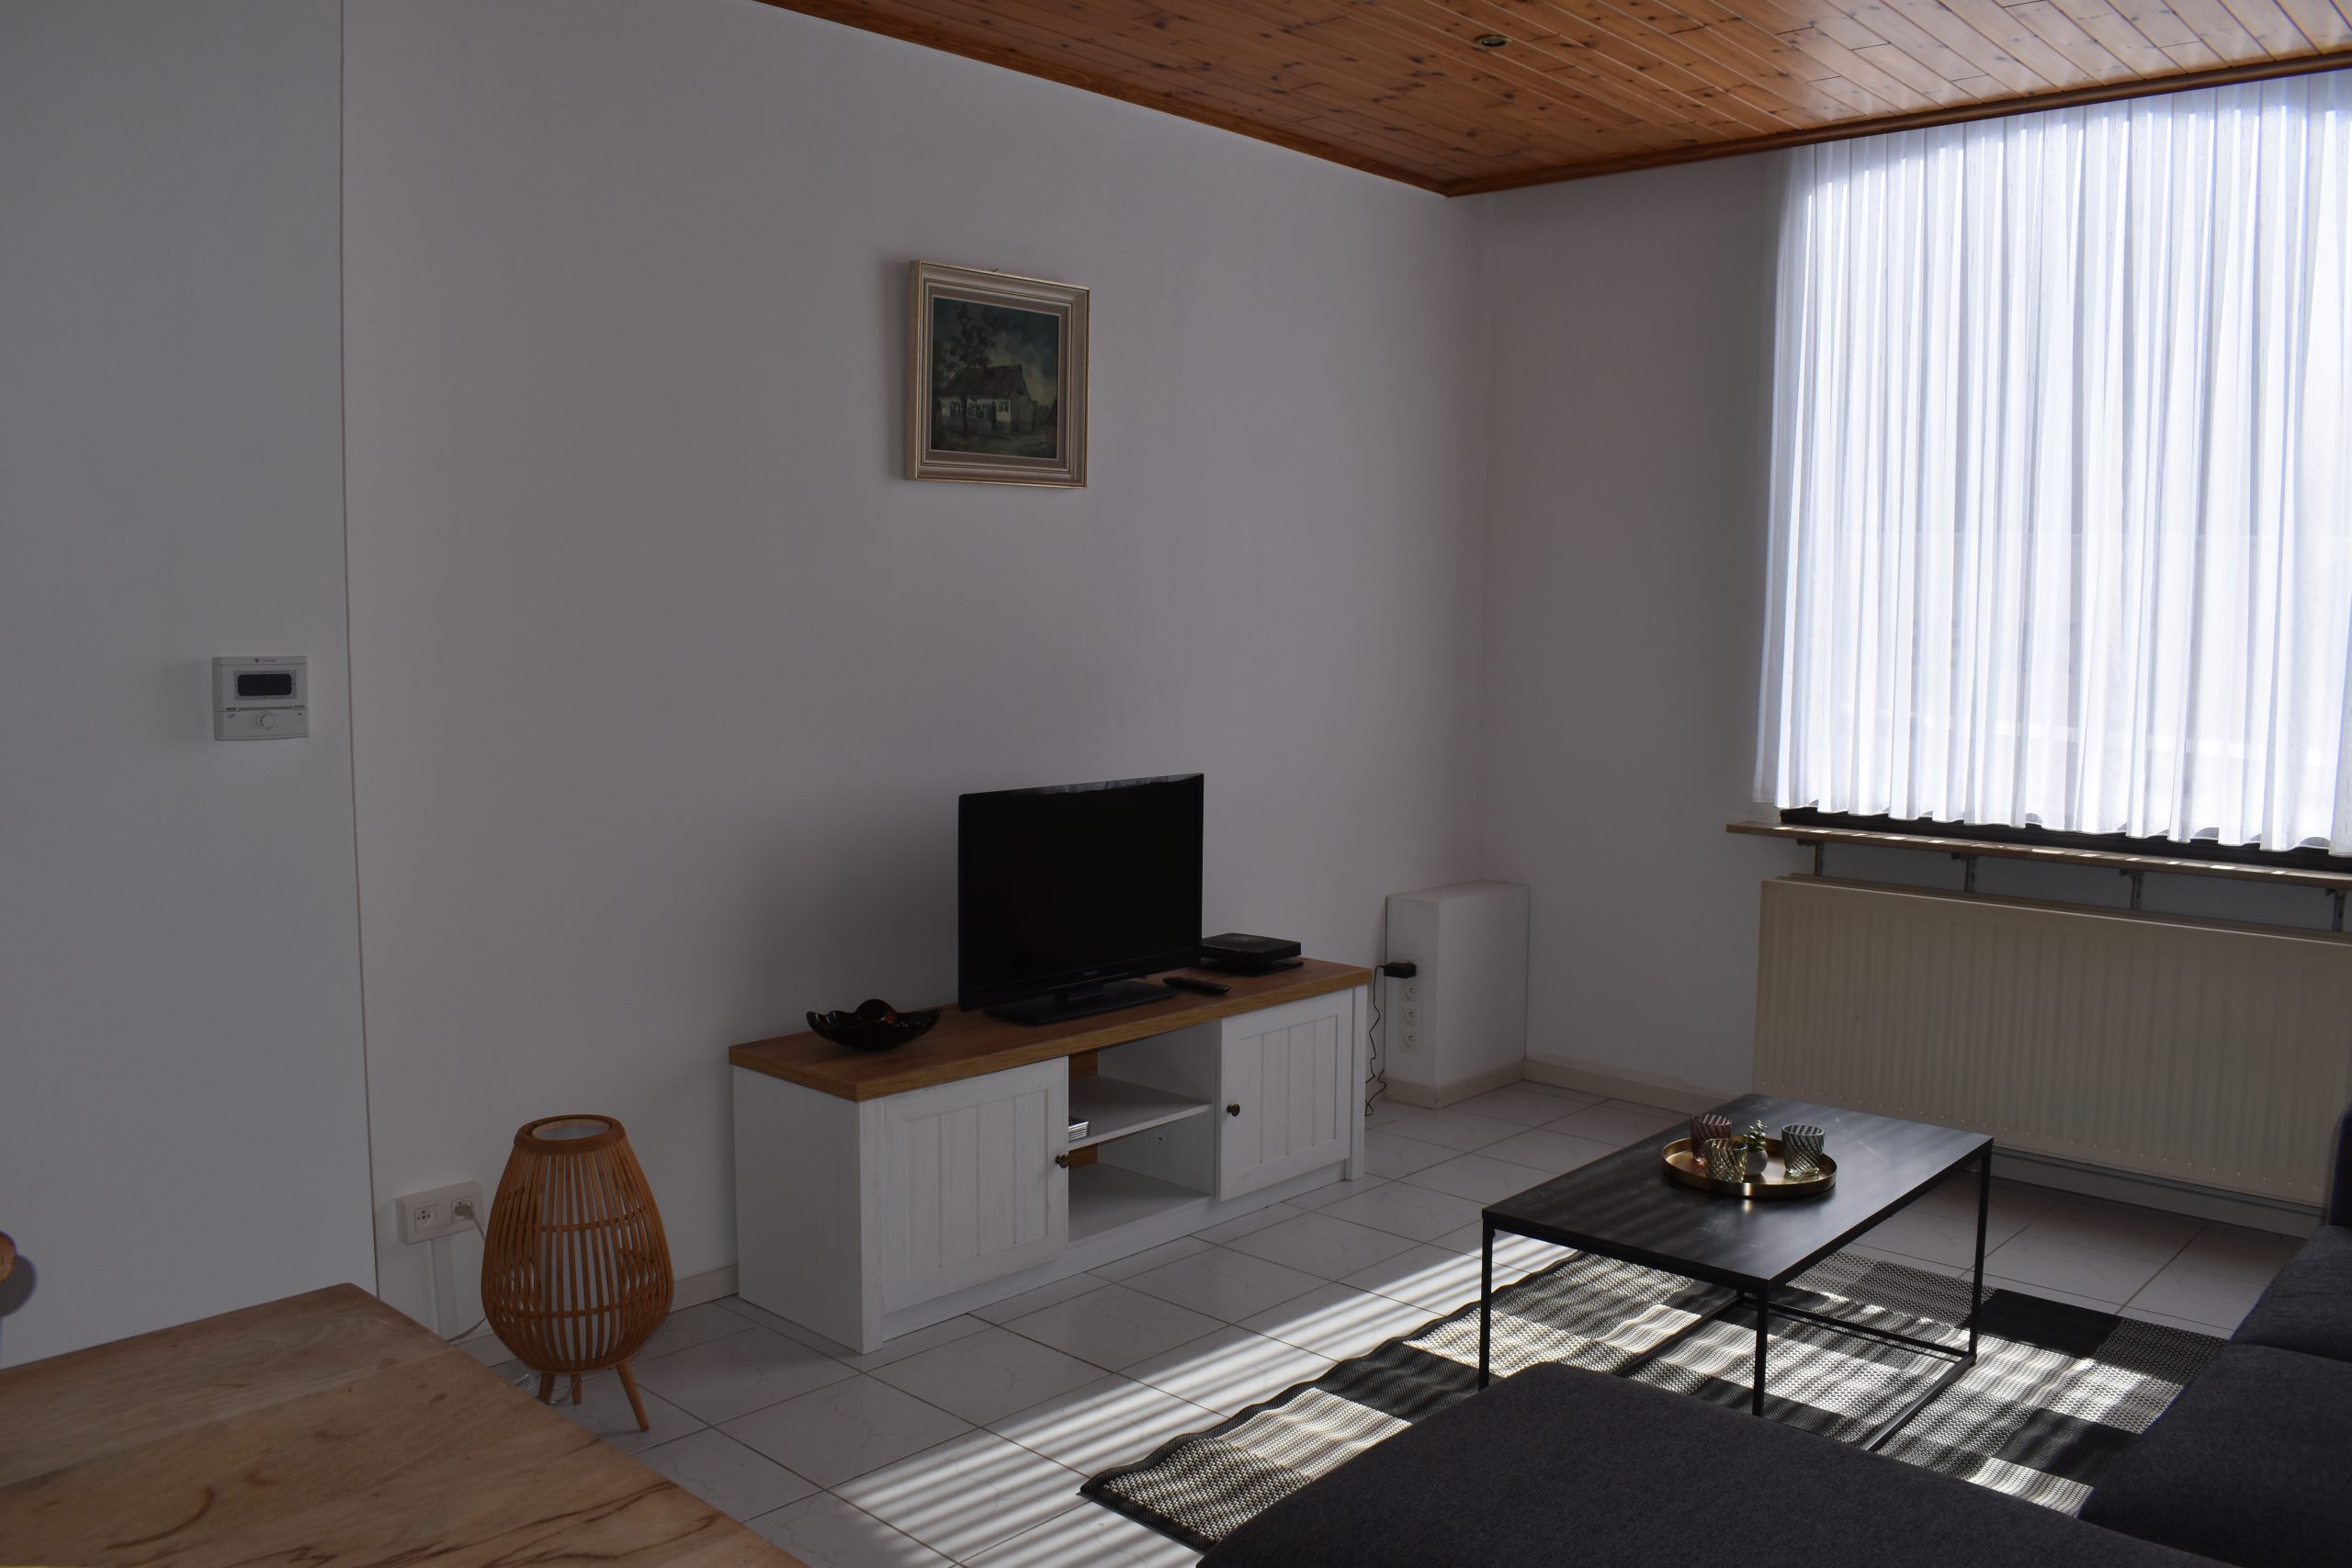 4-bedroom for rent in Antwerp - livingroom